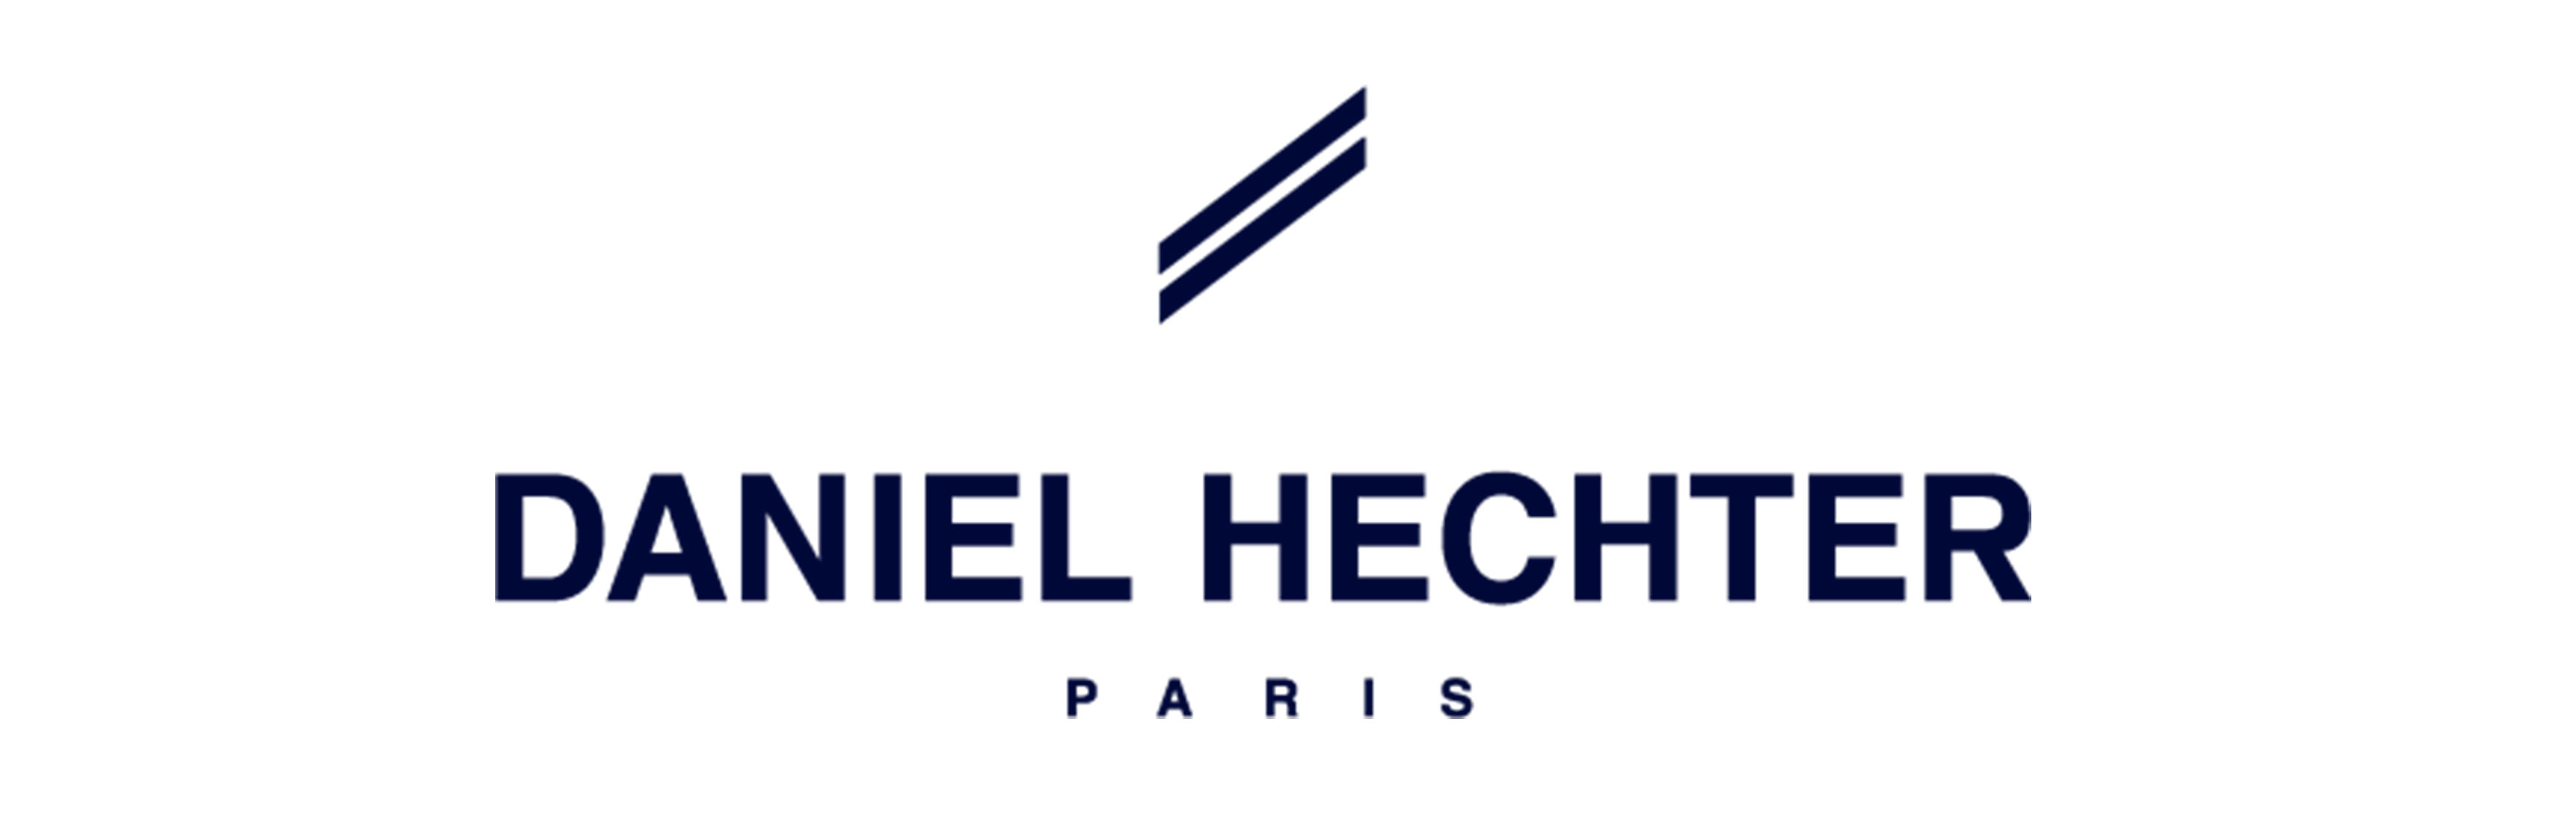 Daniel Hechter Herrenschuhe in Ihrem persönlichen und traditionellen Familienunternehmen ▷ seit über 150 Jahren in der Schweiz. Jetzt einkaufen. ✓